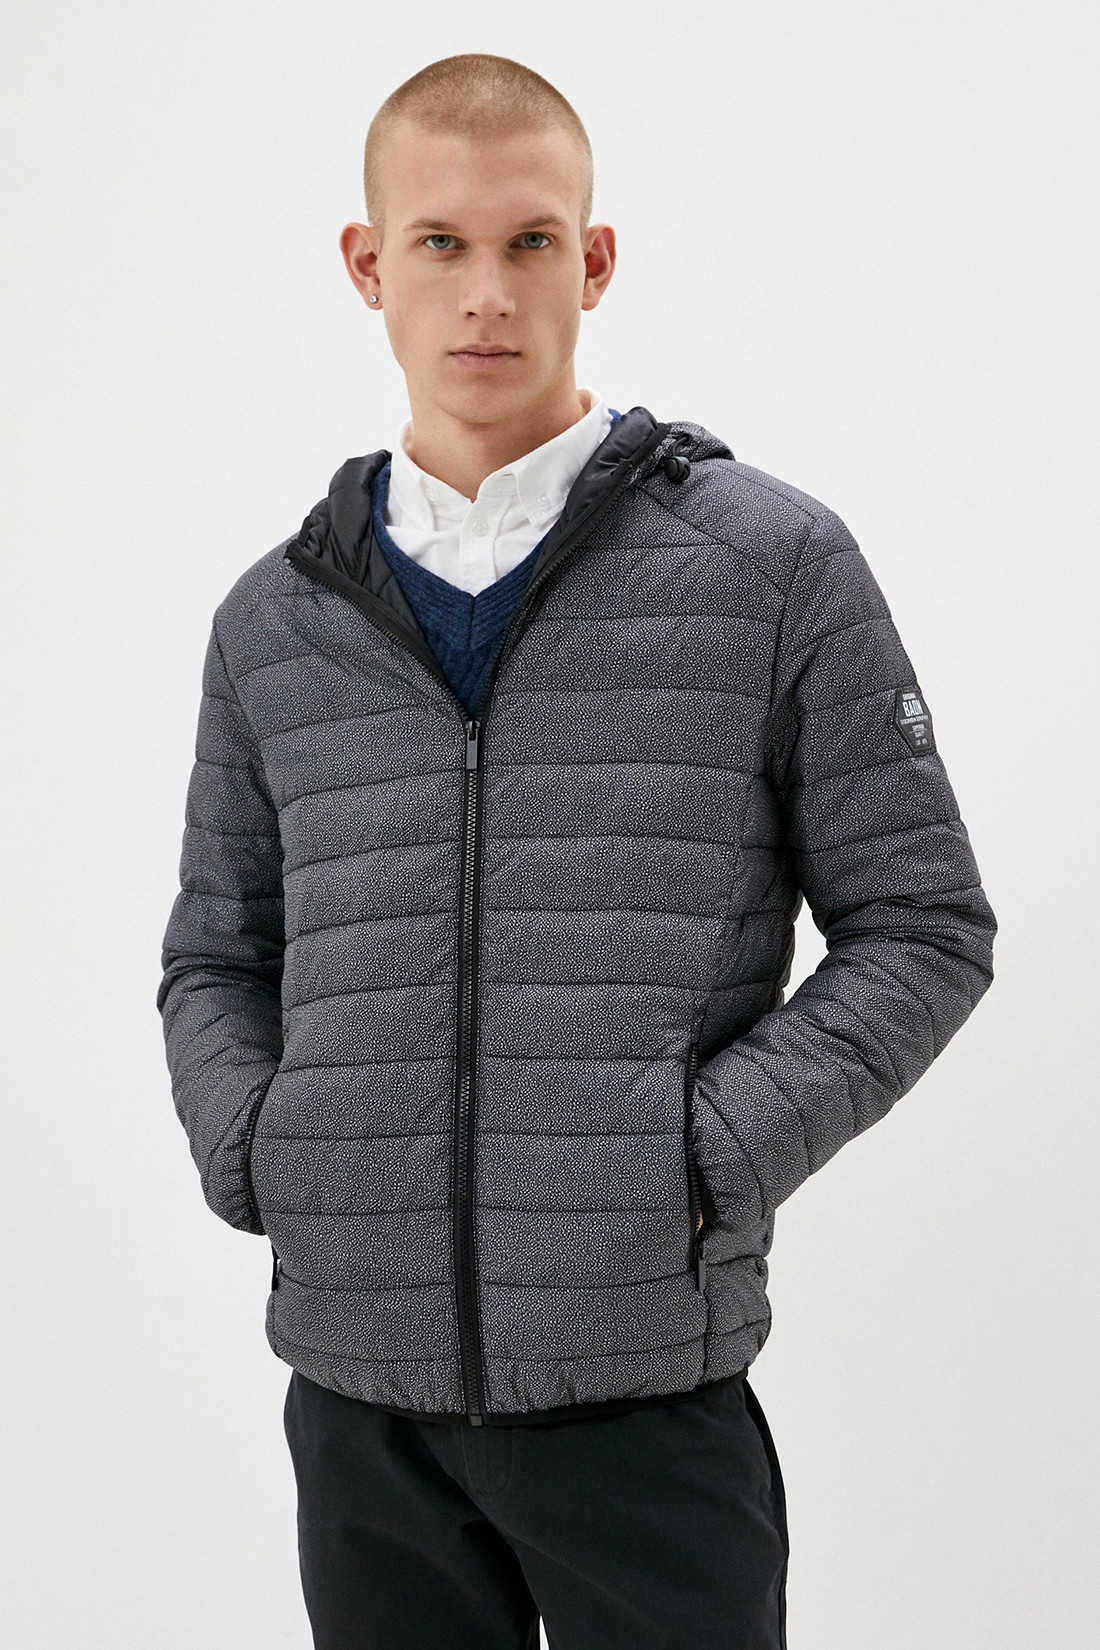 Куртка (Эко пух) (арт. baon B540519), размер M, цвет asphalt printed#серый